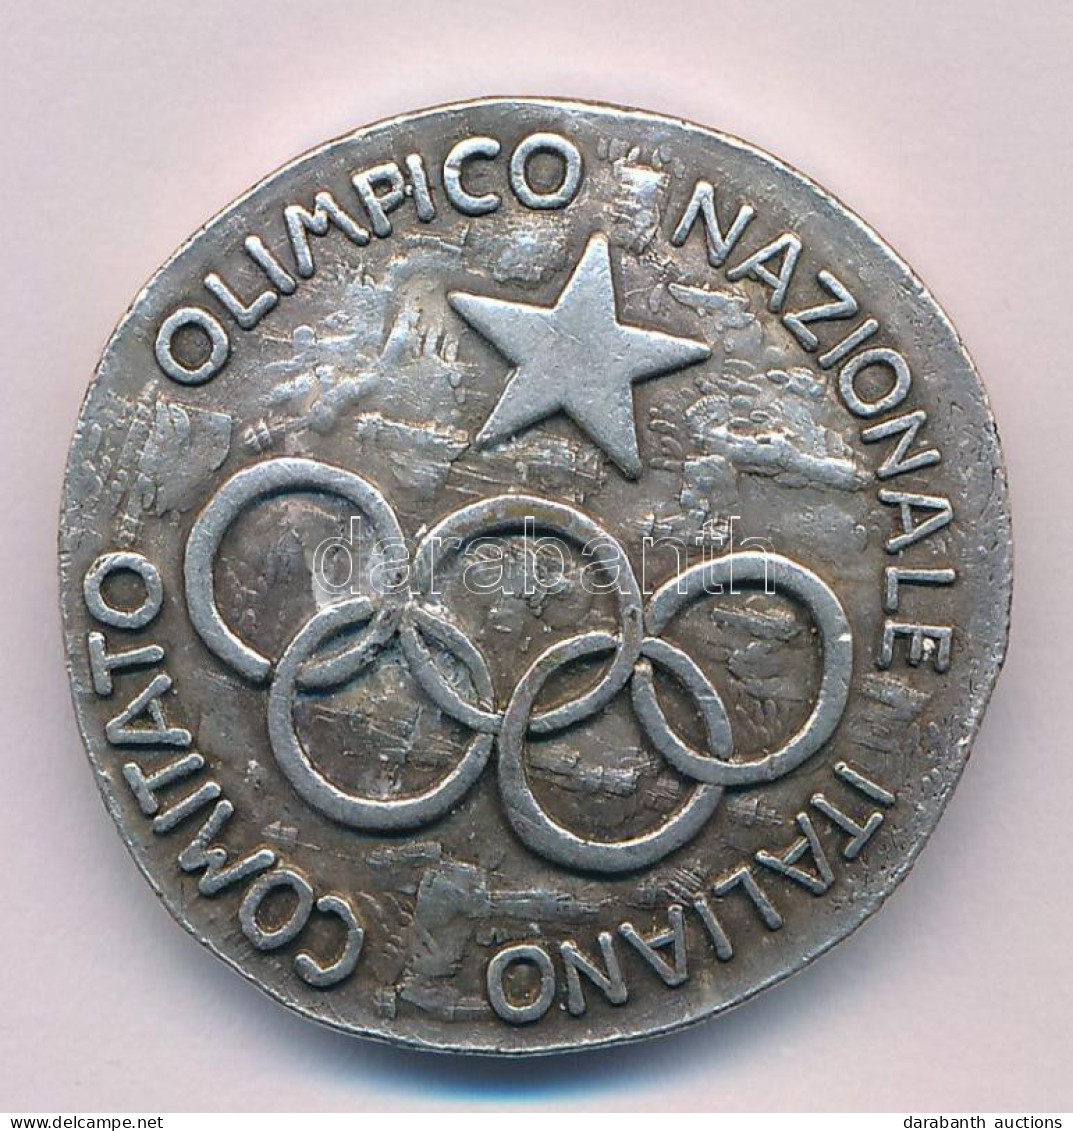 Olaszország DN "Comitato Olimpico Nazionale Italiano (Olasz Nemzeti Olimpiai Bizottság)" Az 1914-ben Alapított Bizottság - Unclassified